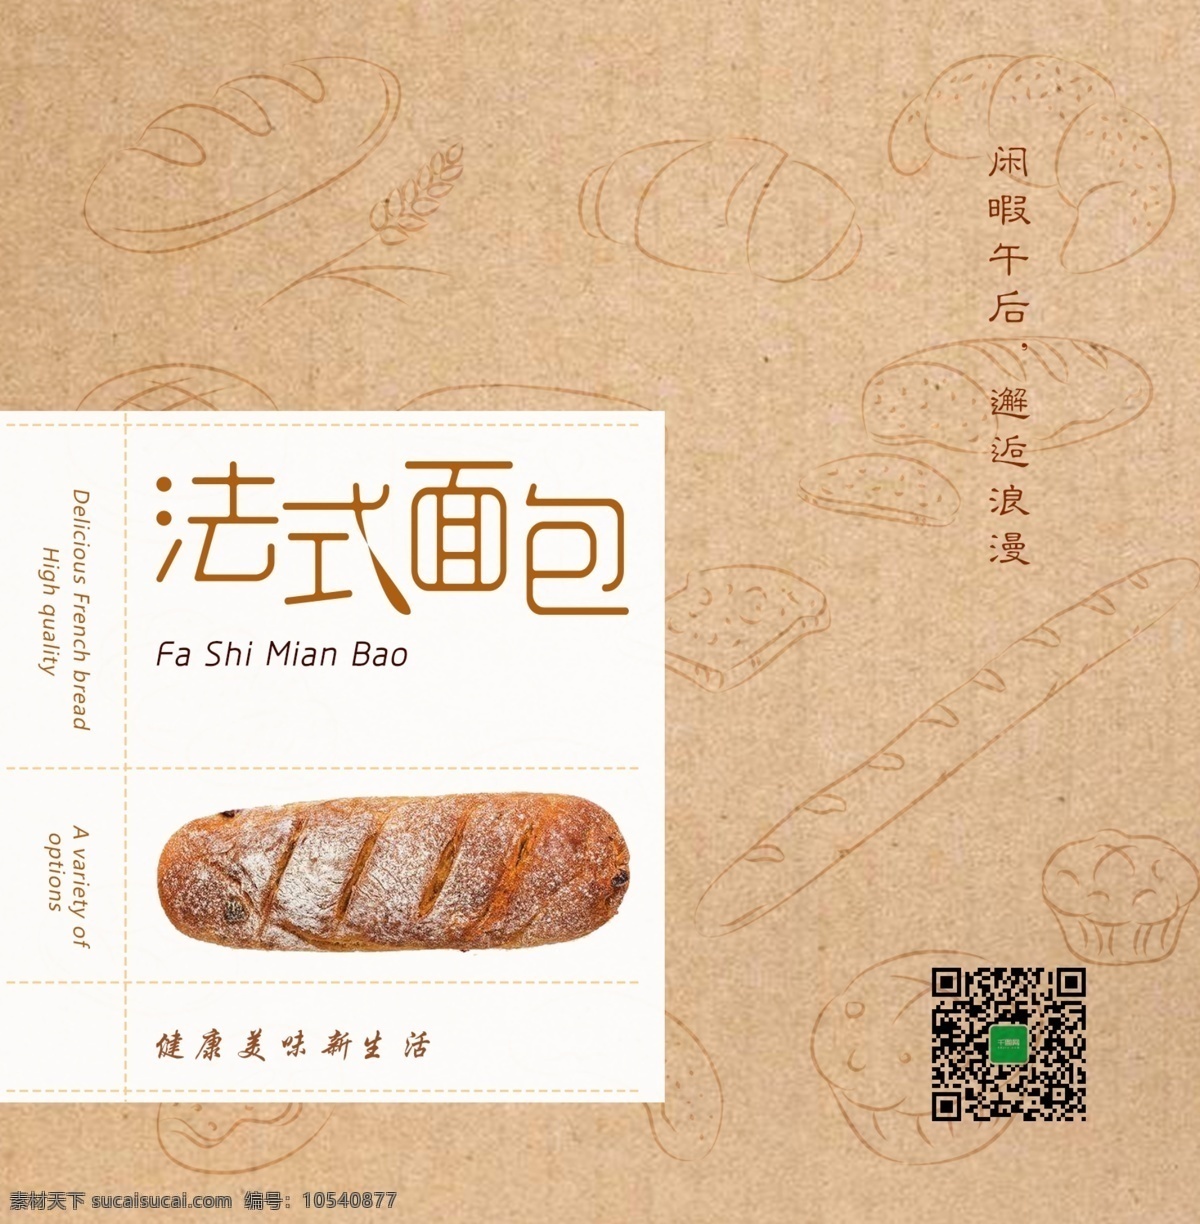 包装 餐厅 创意 法式面包 简约 面包 牛皮纸 商场 手提袋 甜点 闲暇 印刷 法式